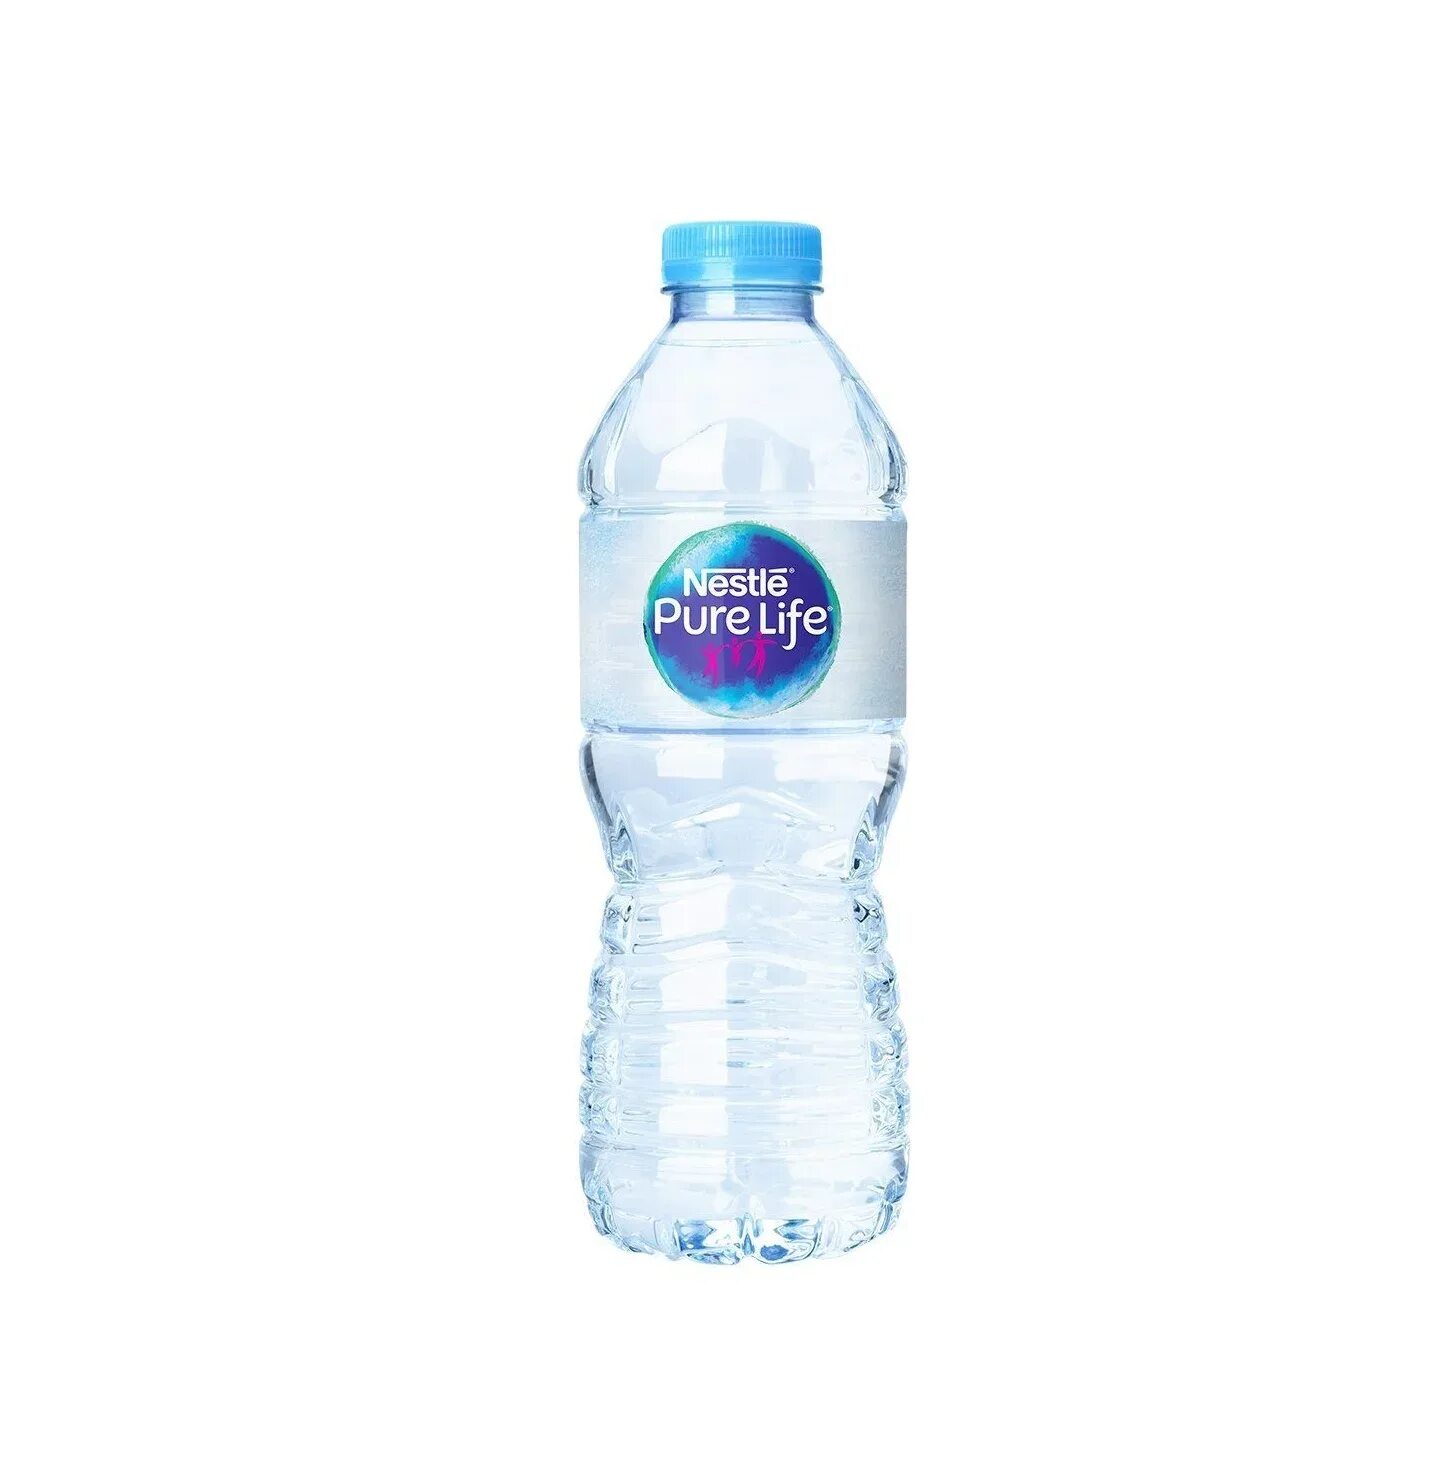 Воды жизни купить. Nestle Pure Life 0.5. Nestle вода. Минеральная вода Нестле. Бутылка воды 100 мл.